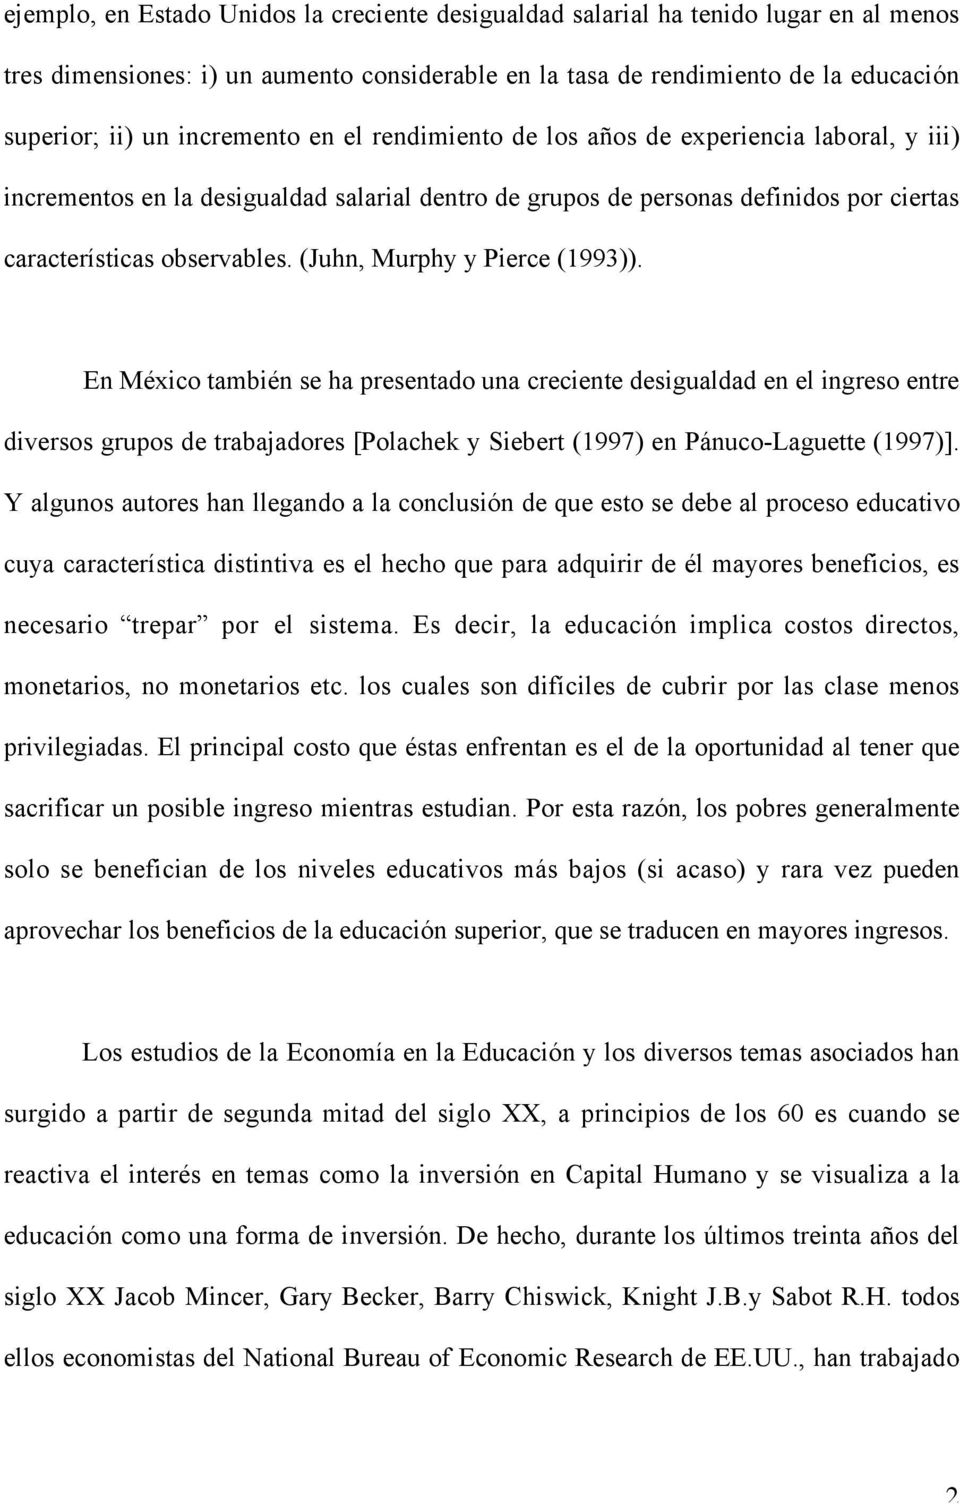 (Juhn, Murphy y Pierce (1993)). En México también se ha presentado una creciente desigualdad en el ingreso entre diversos grupos de trabajadores [Polachek y Siebert (1997) en Pánuco-Laguette (1997)].